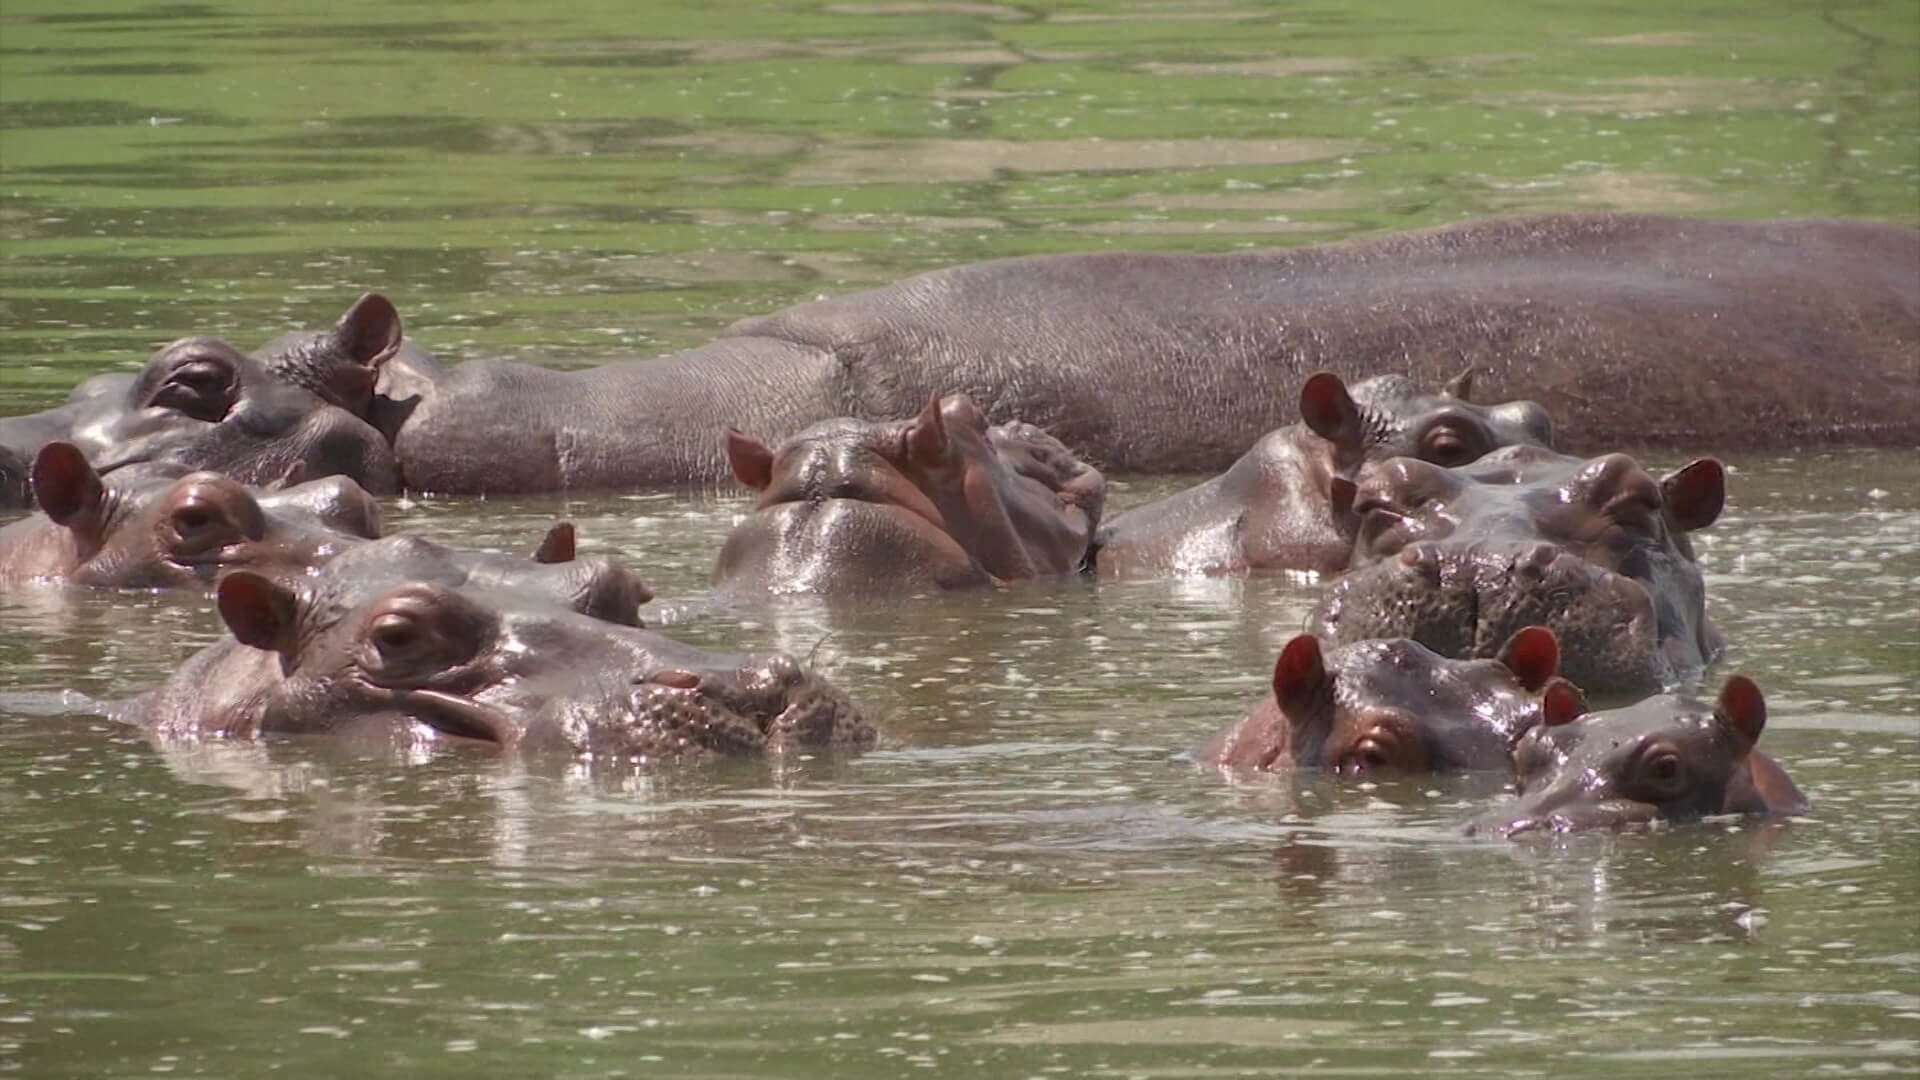 "Los hipopótamos no deben estar libres sino confinados"